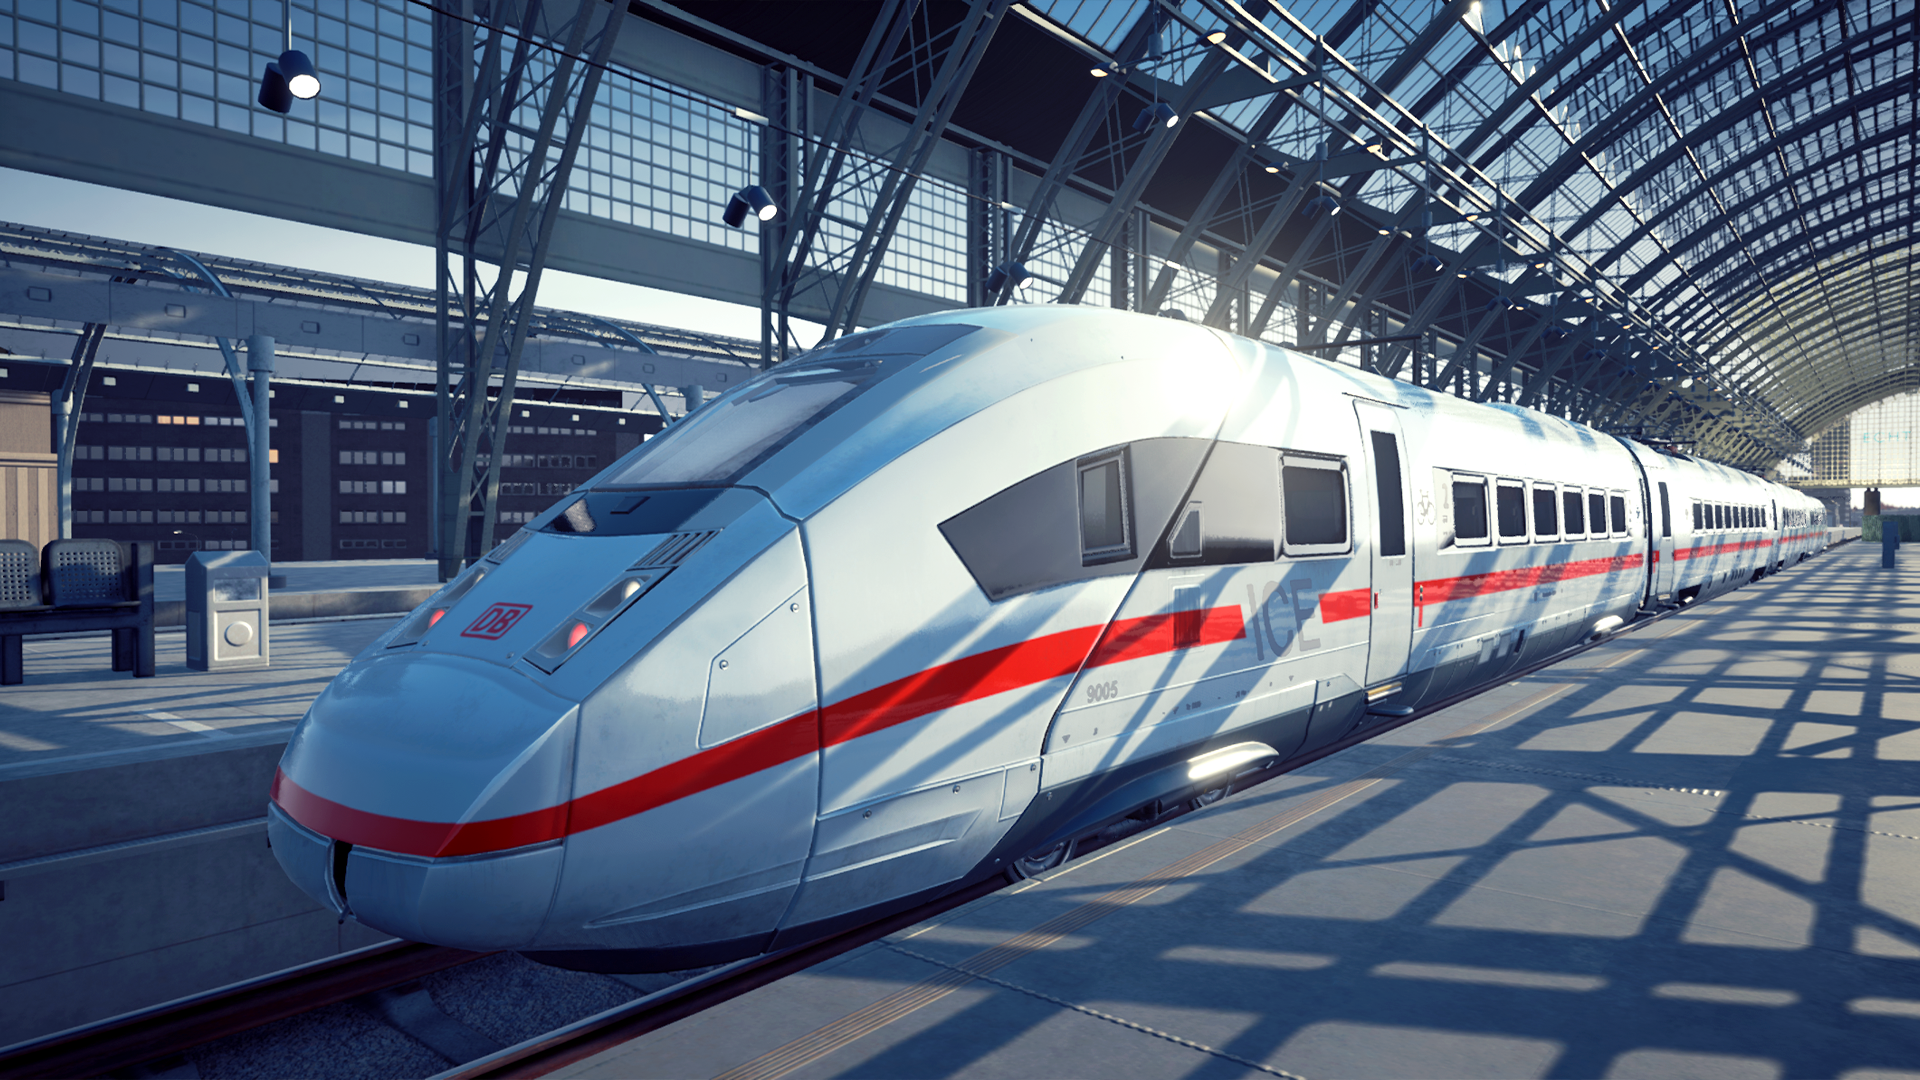 Train Life: A Railway Simulator - Launch | LATAM (cfd1b3c6-94ed-4552-9953-4452c081ea0d)